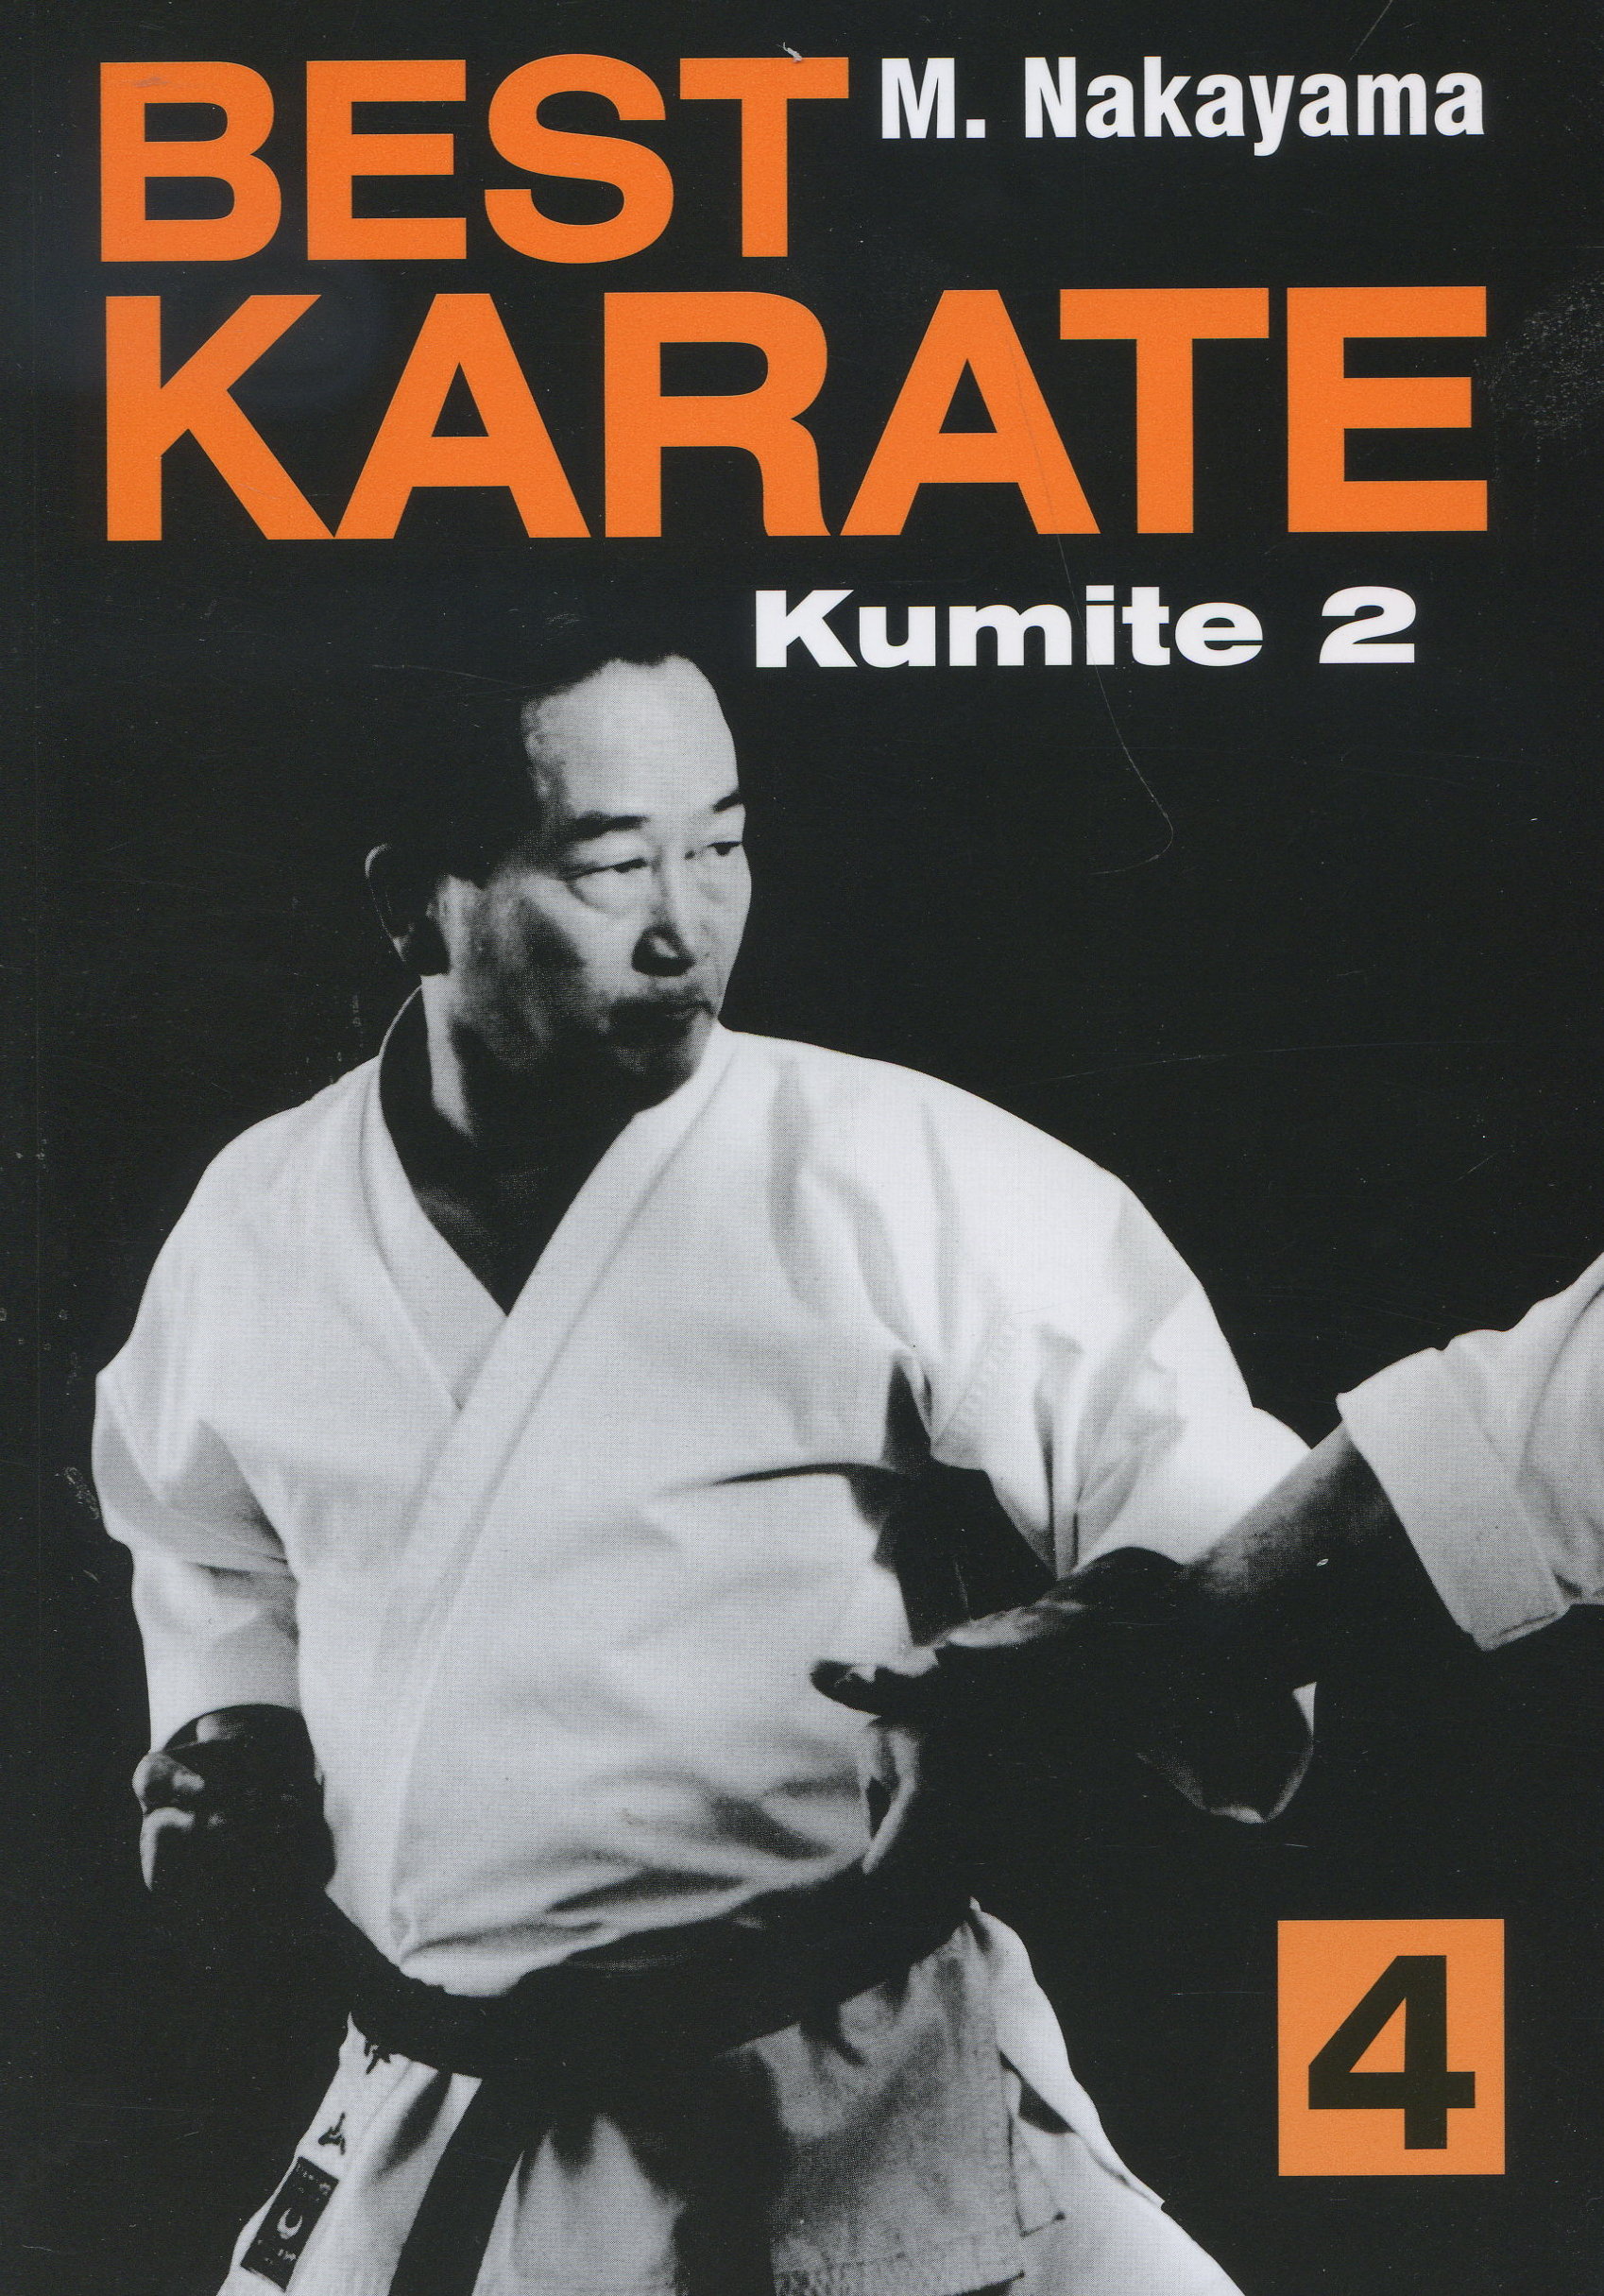 Best Karate 4